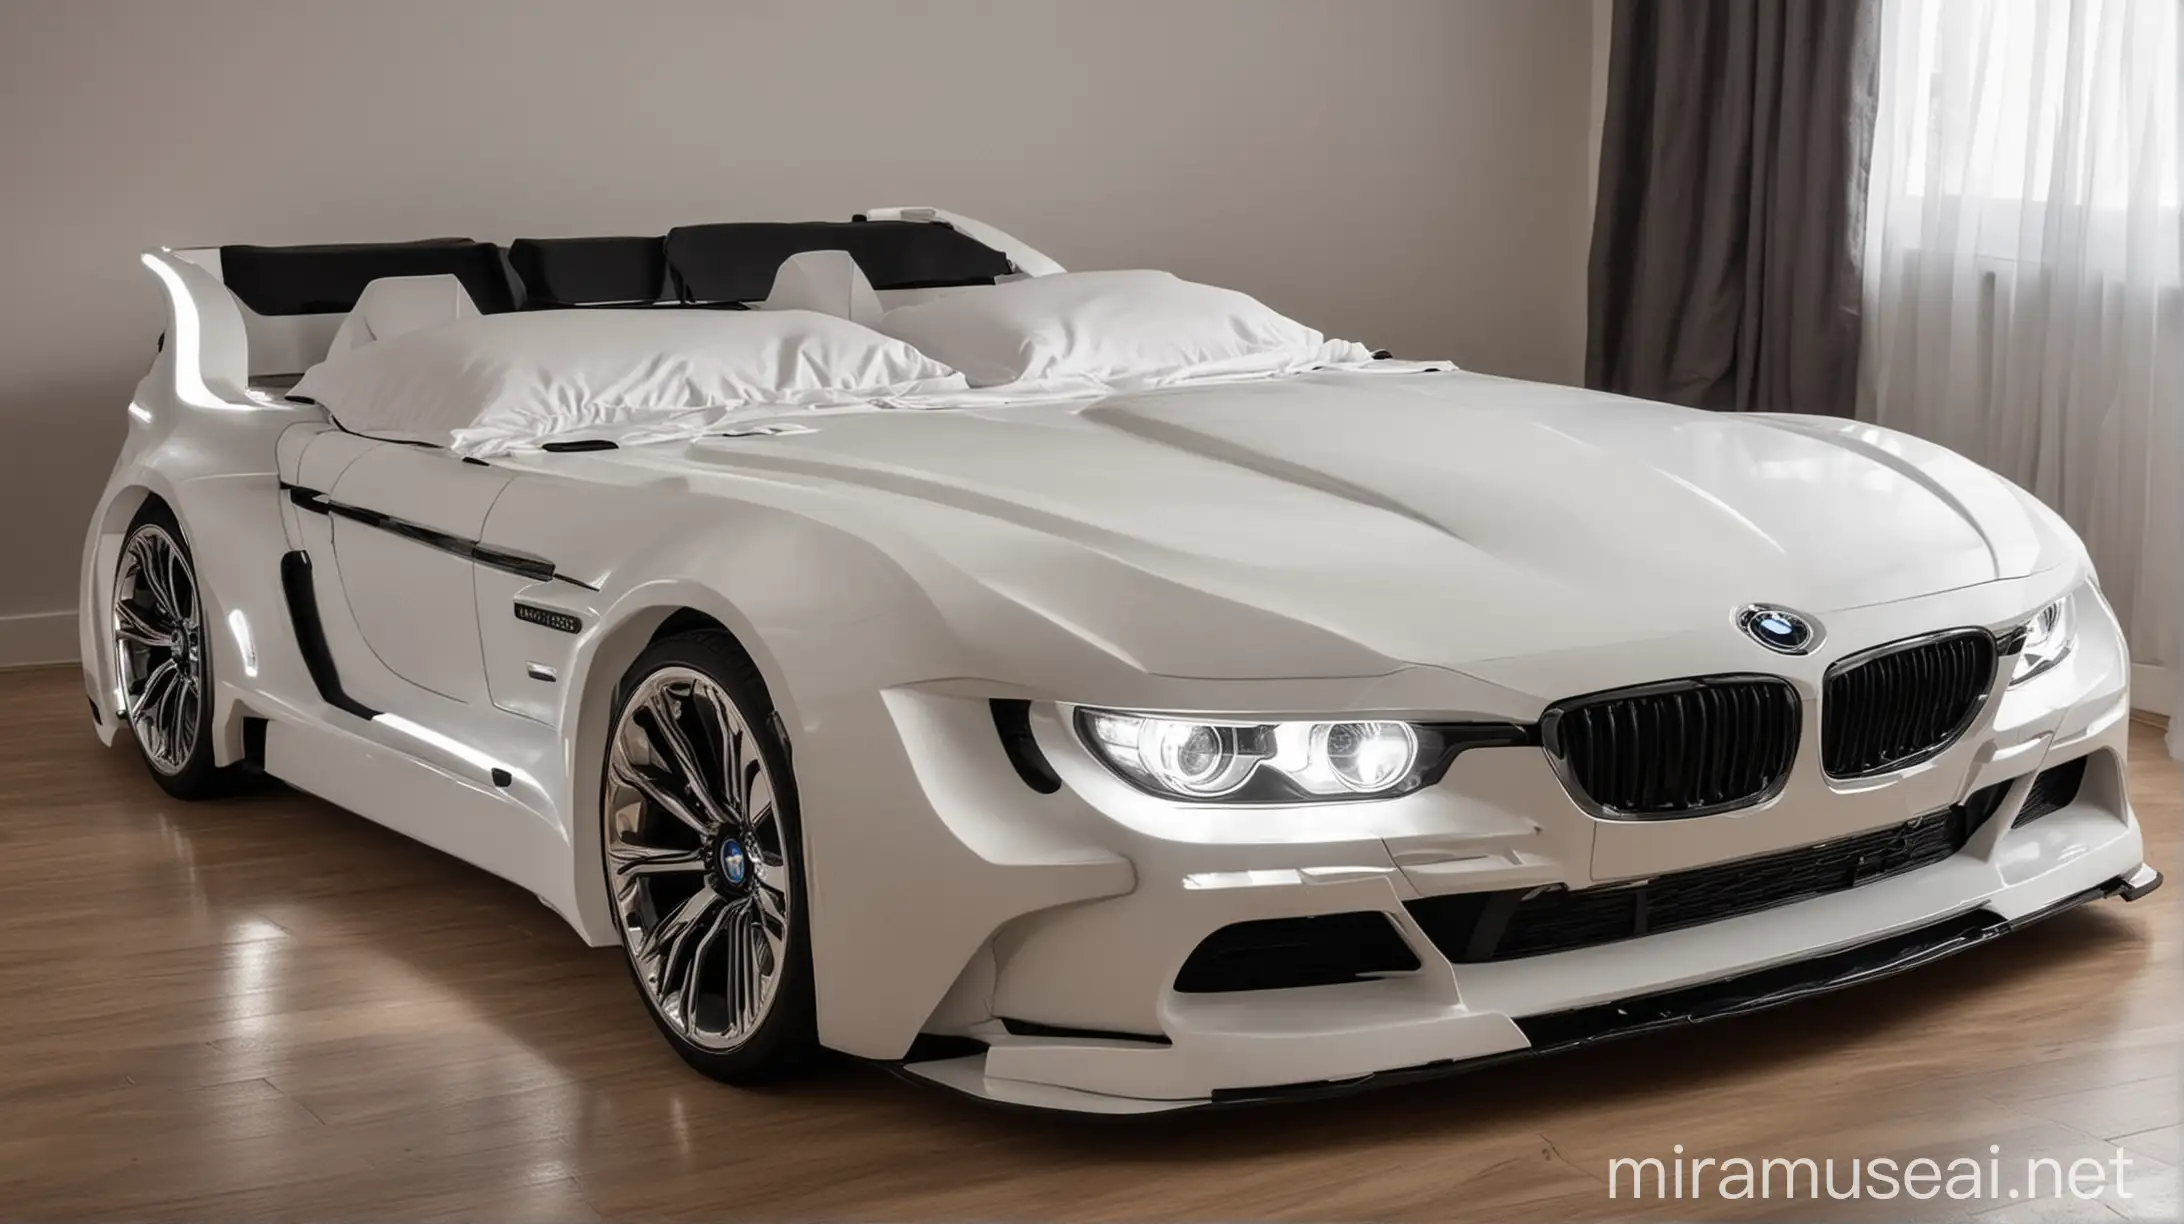 Двухспальная кровать в форме автомобиля марки БМВ с включенными фарами